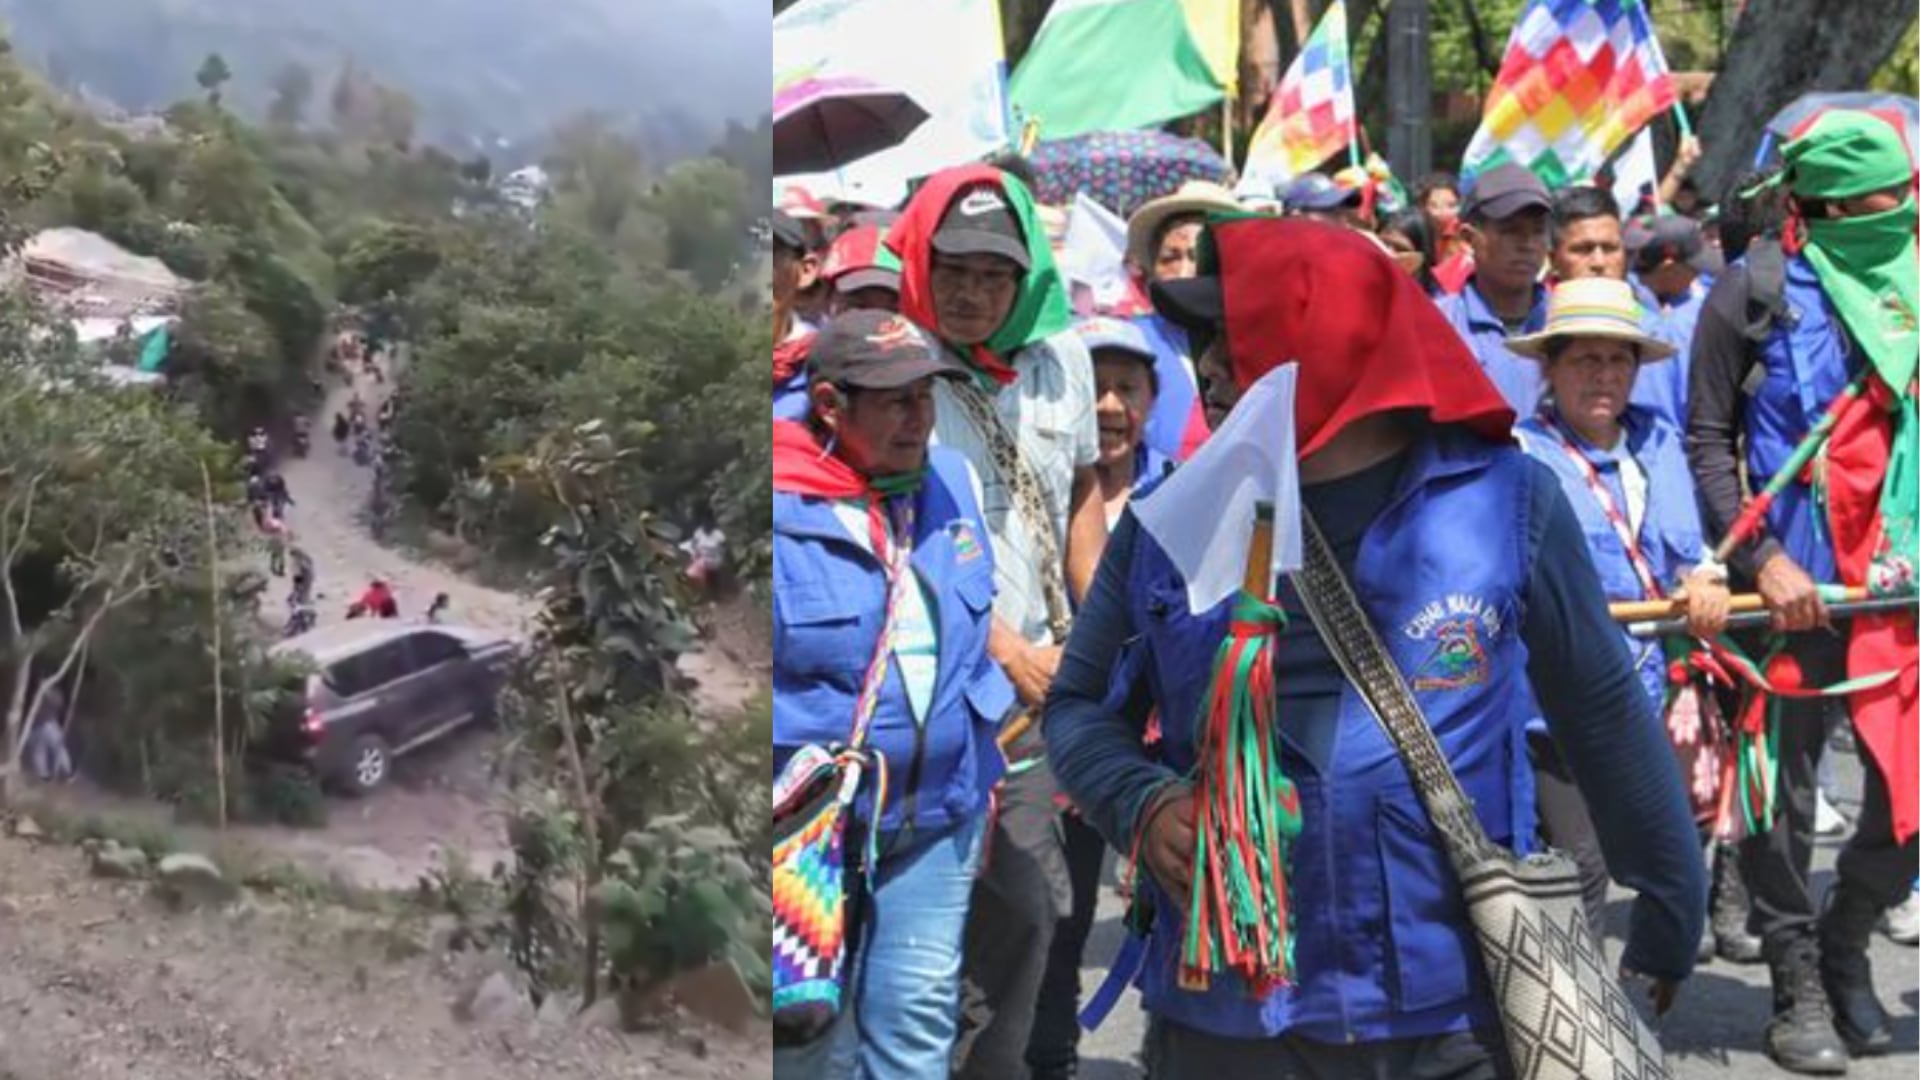 Grupo armado atacó a minga indígena en Toribio, Cauca; hay heridos de gravedad